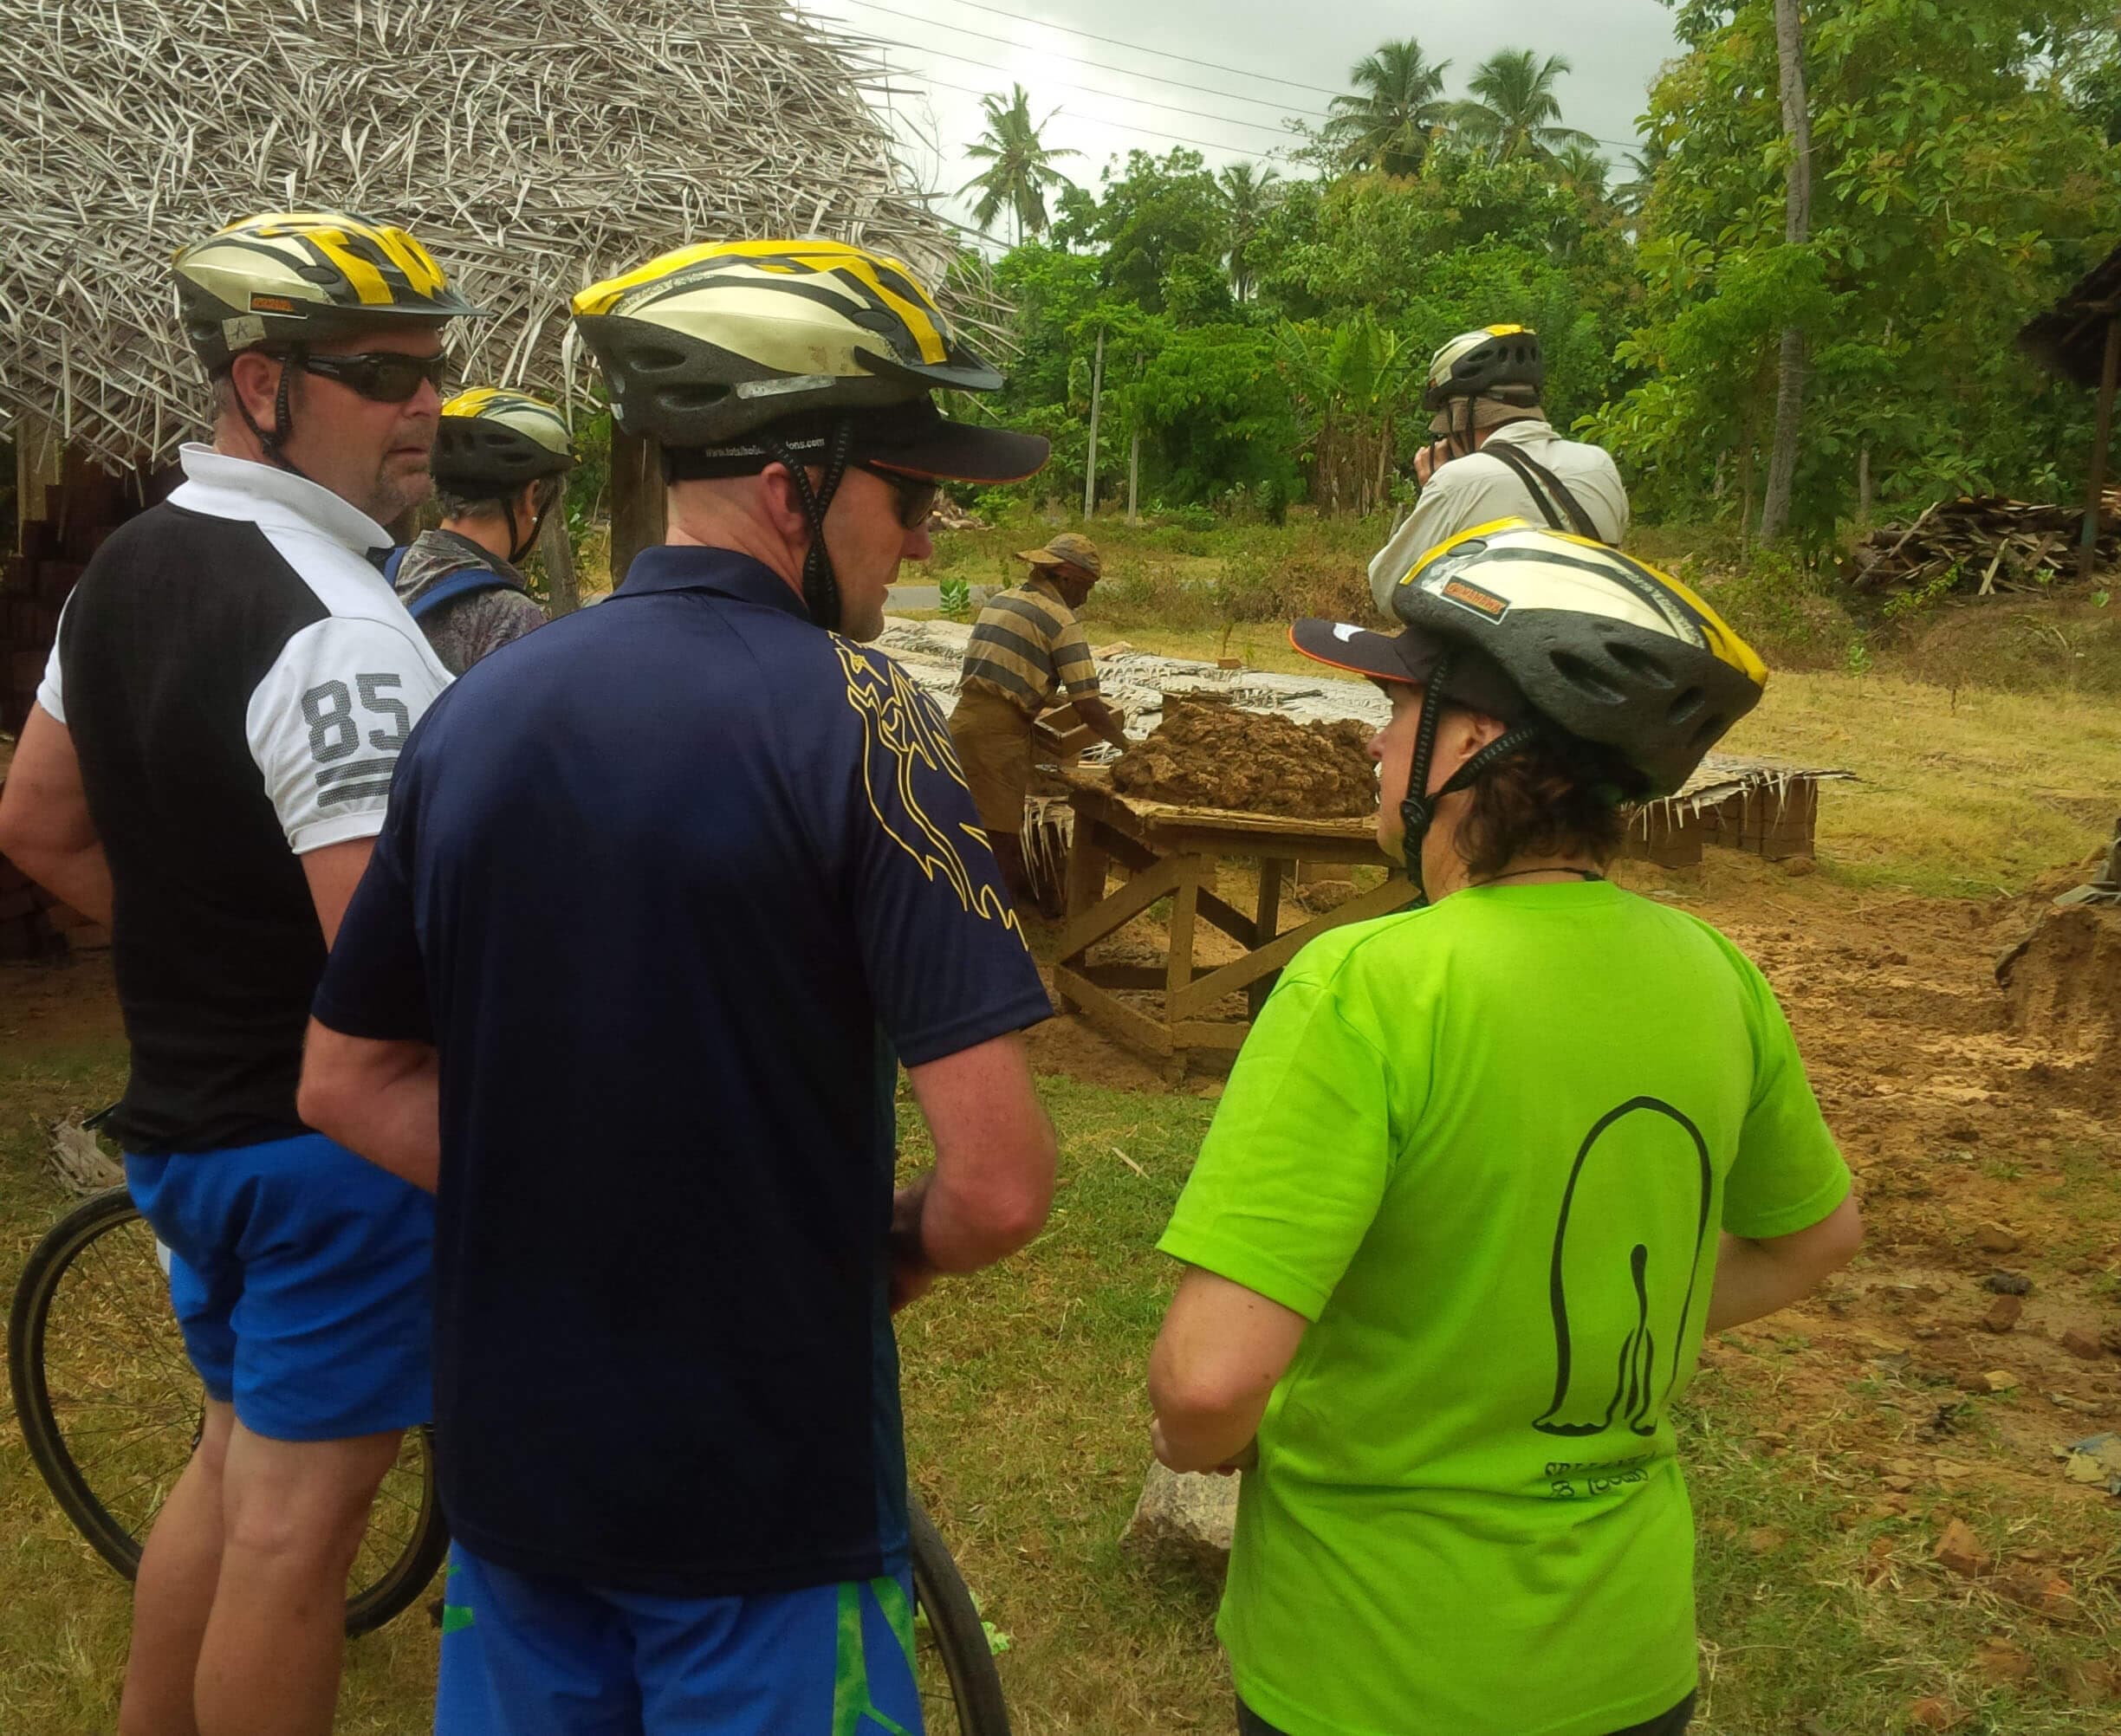 Los ciclistas exploran el proceso de fabricación de ladrillos de arcilla en Negombo Sri Lanka